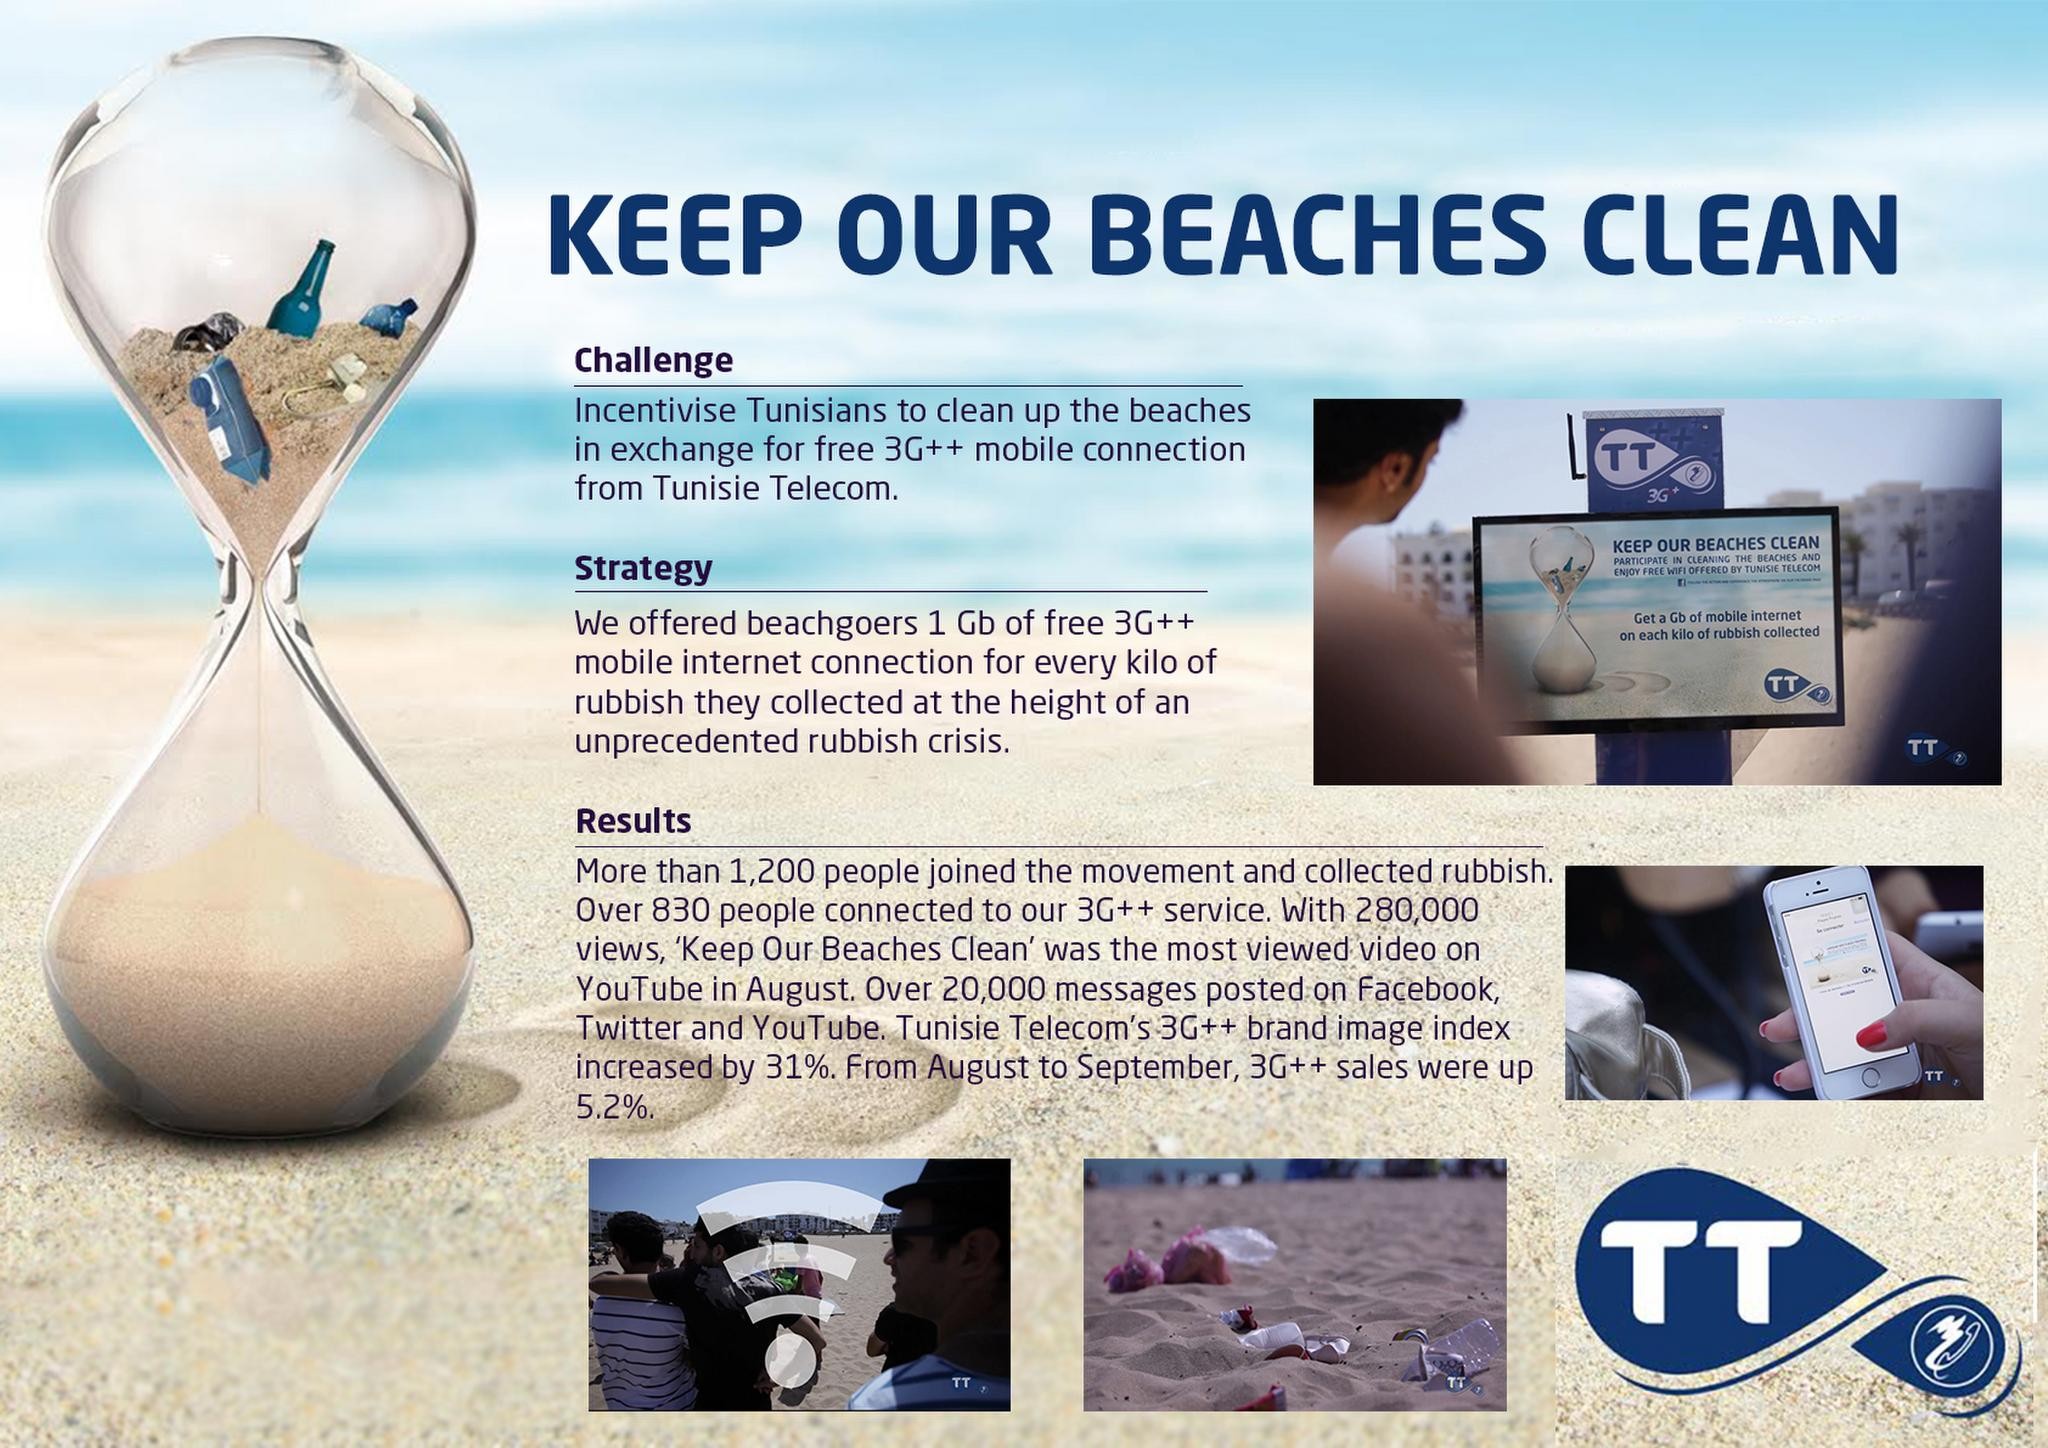 KEEP OUR BEACHES CLEAN